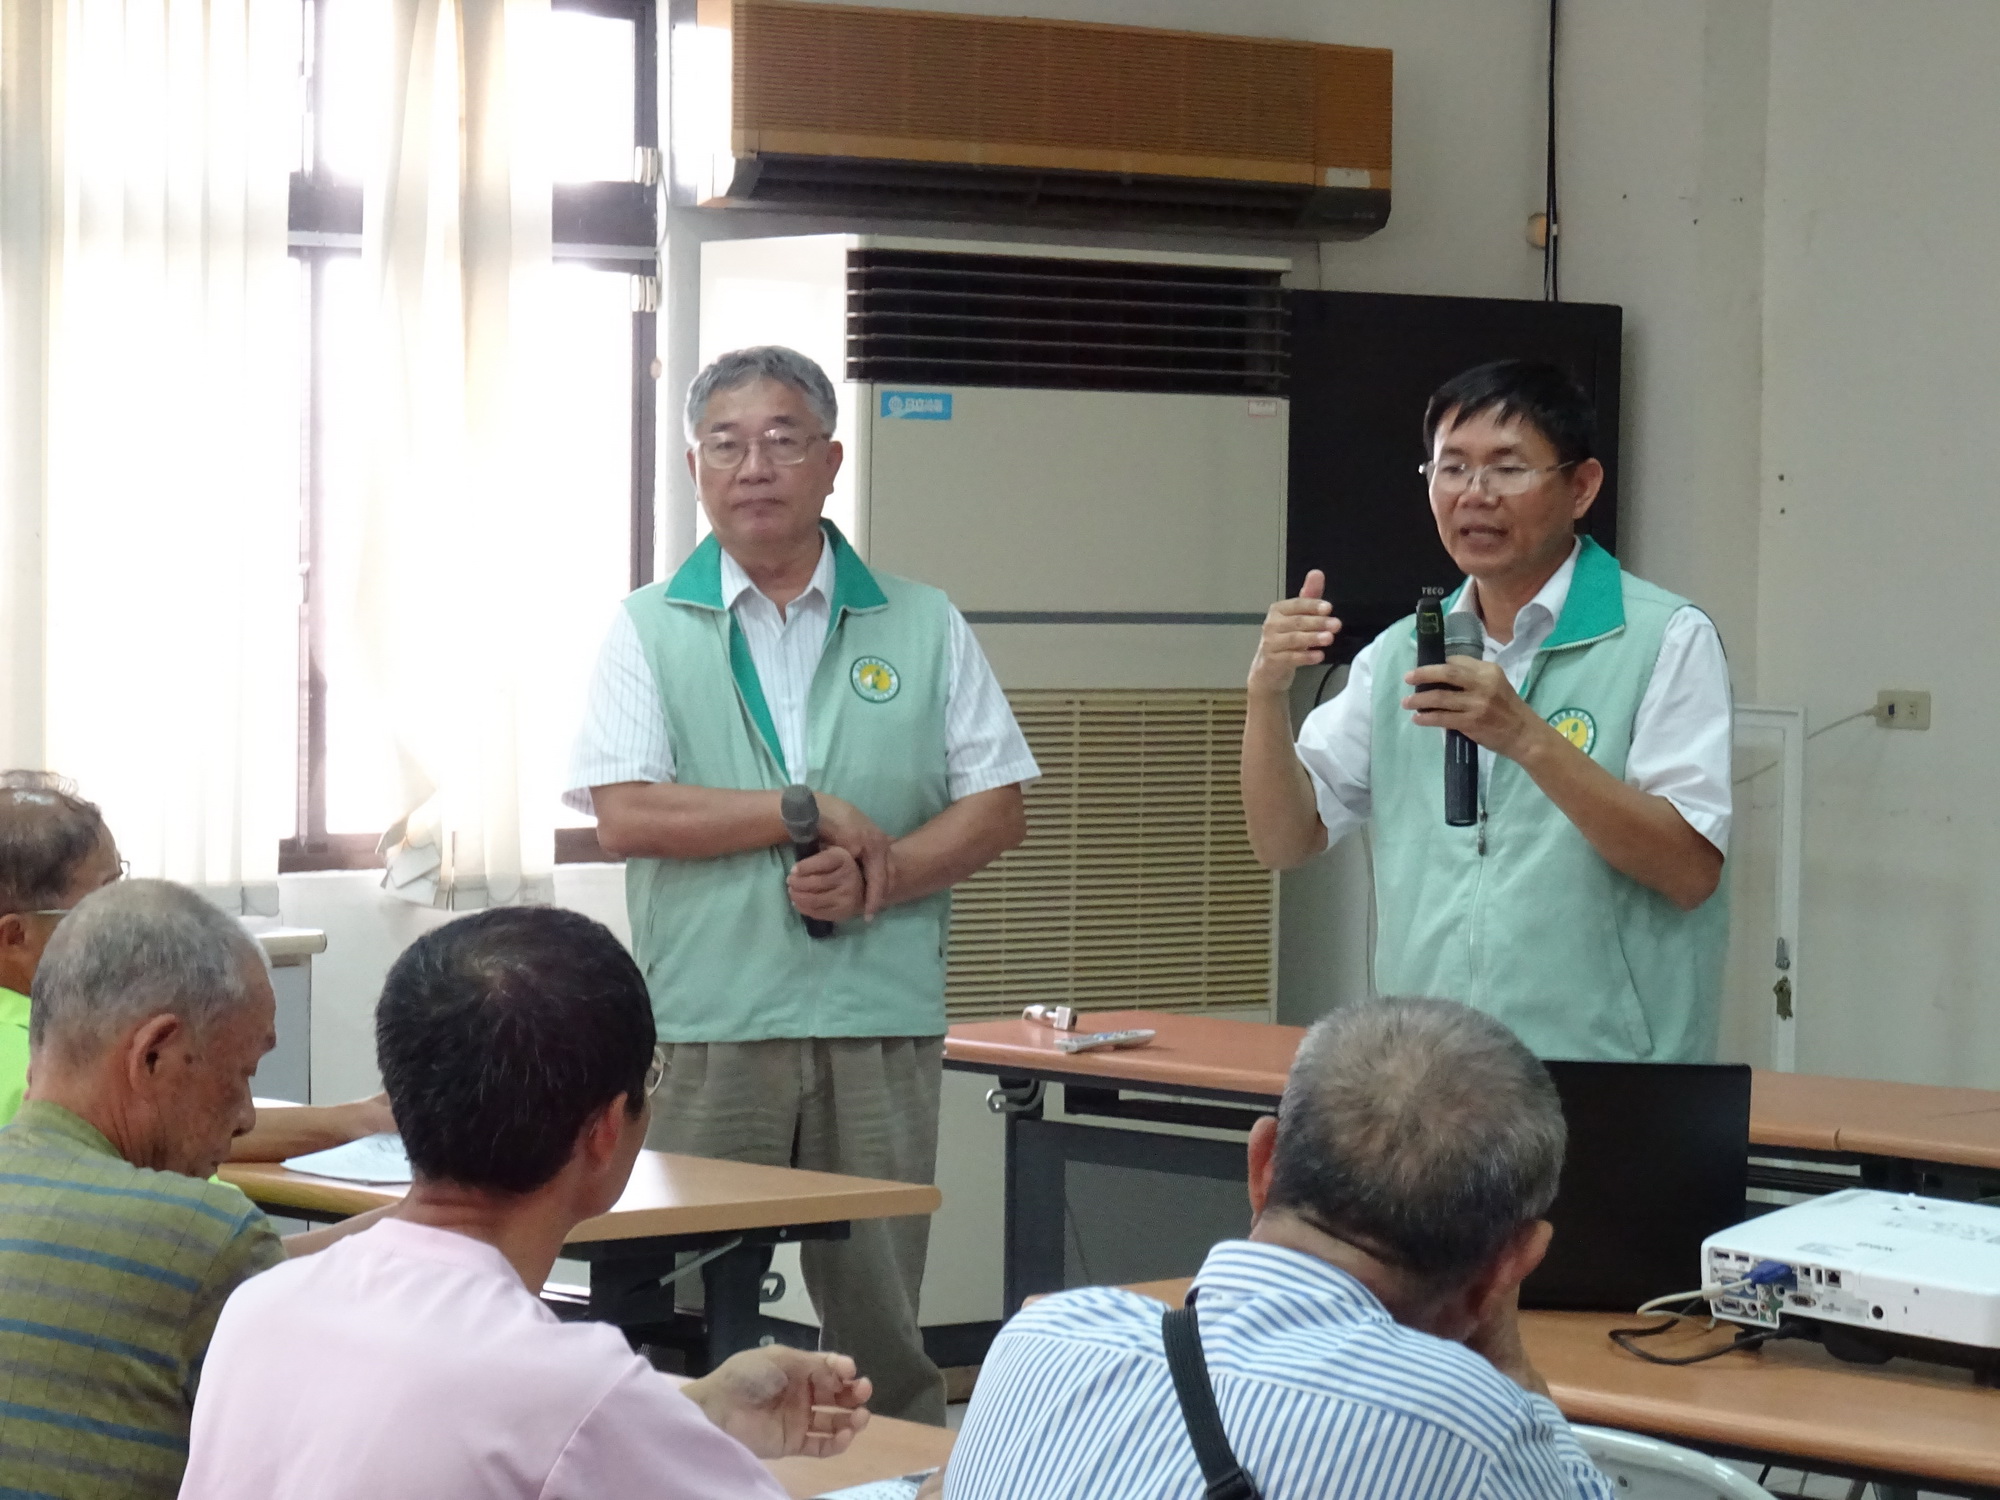 賴榮茂課長(右)回答颱風後蓮霧催花的問題